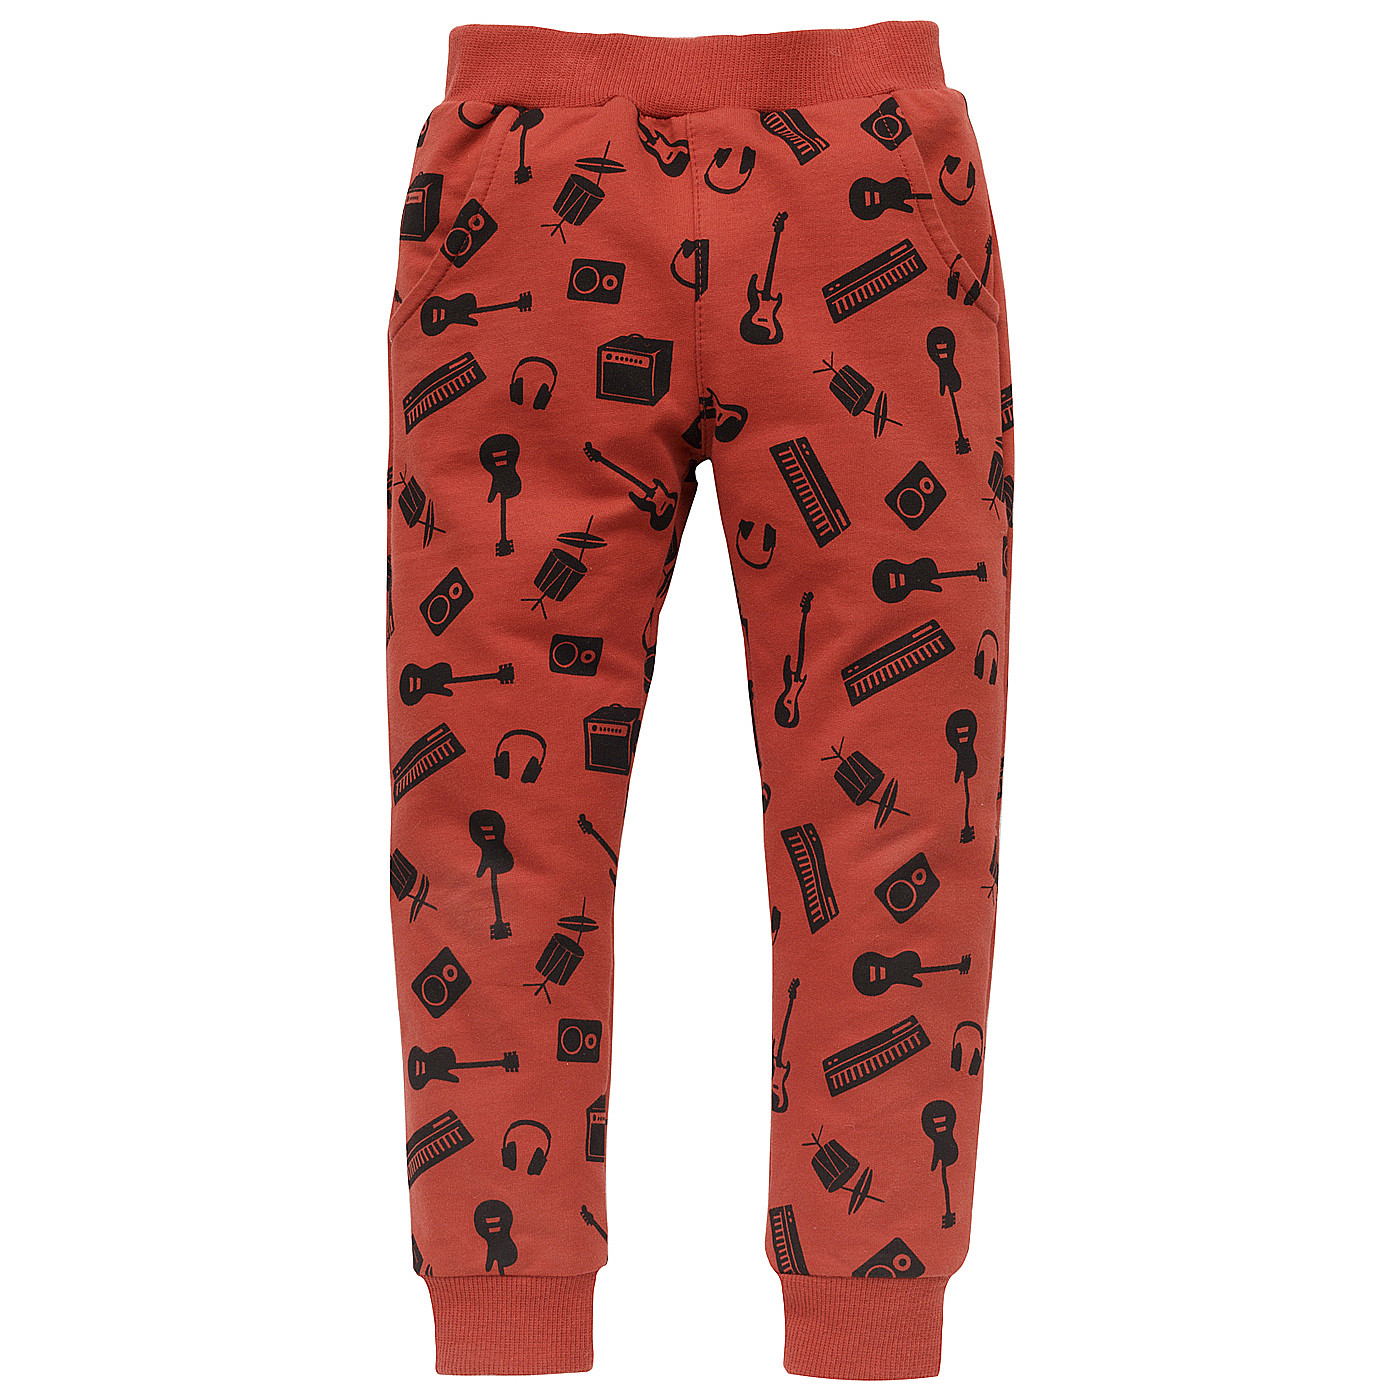 Pinokio Let's Rock Pants Red (Červené kalhoty) 116